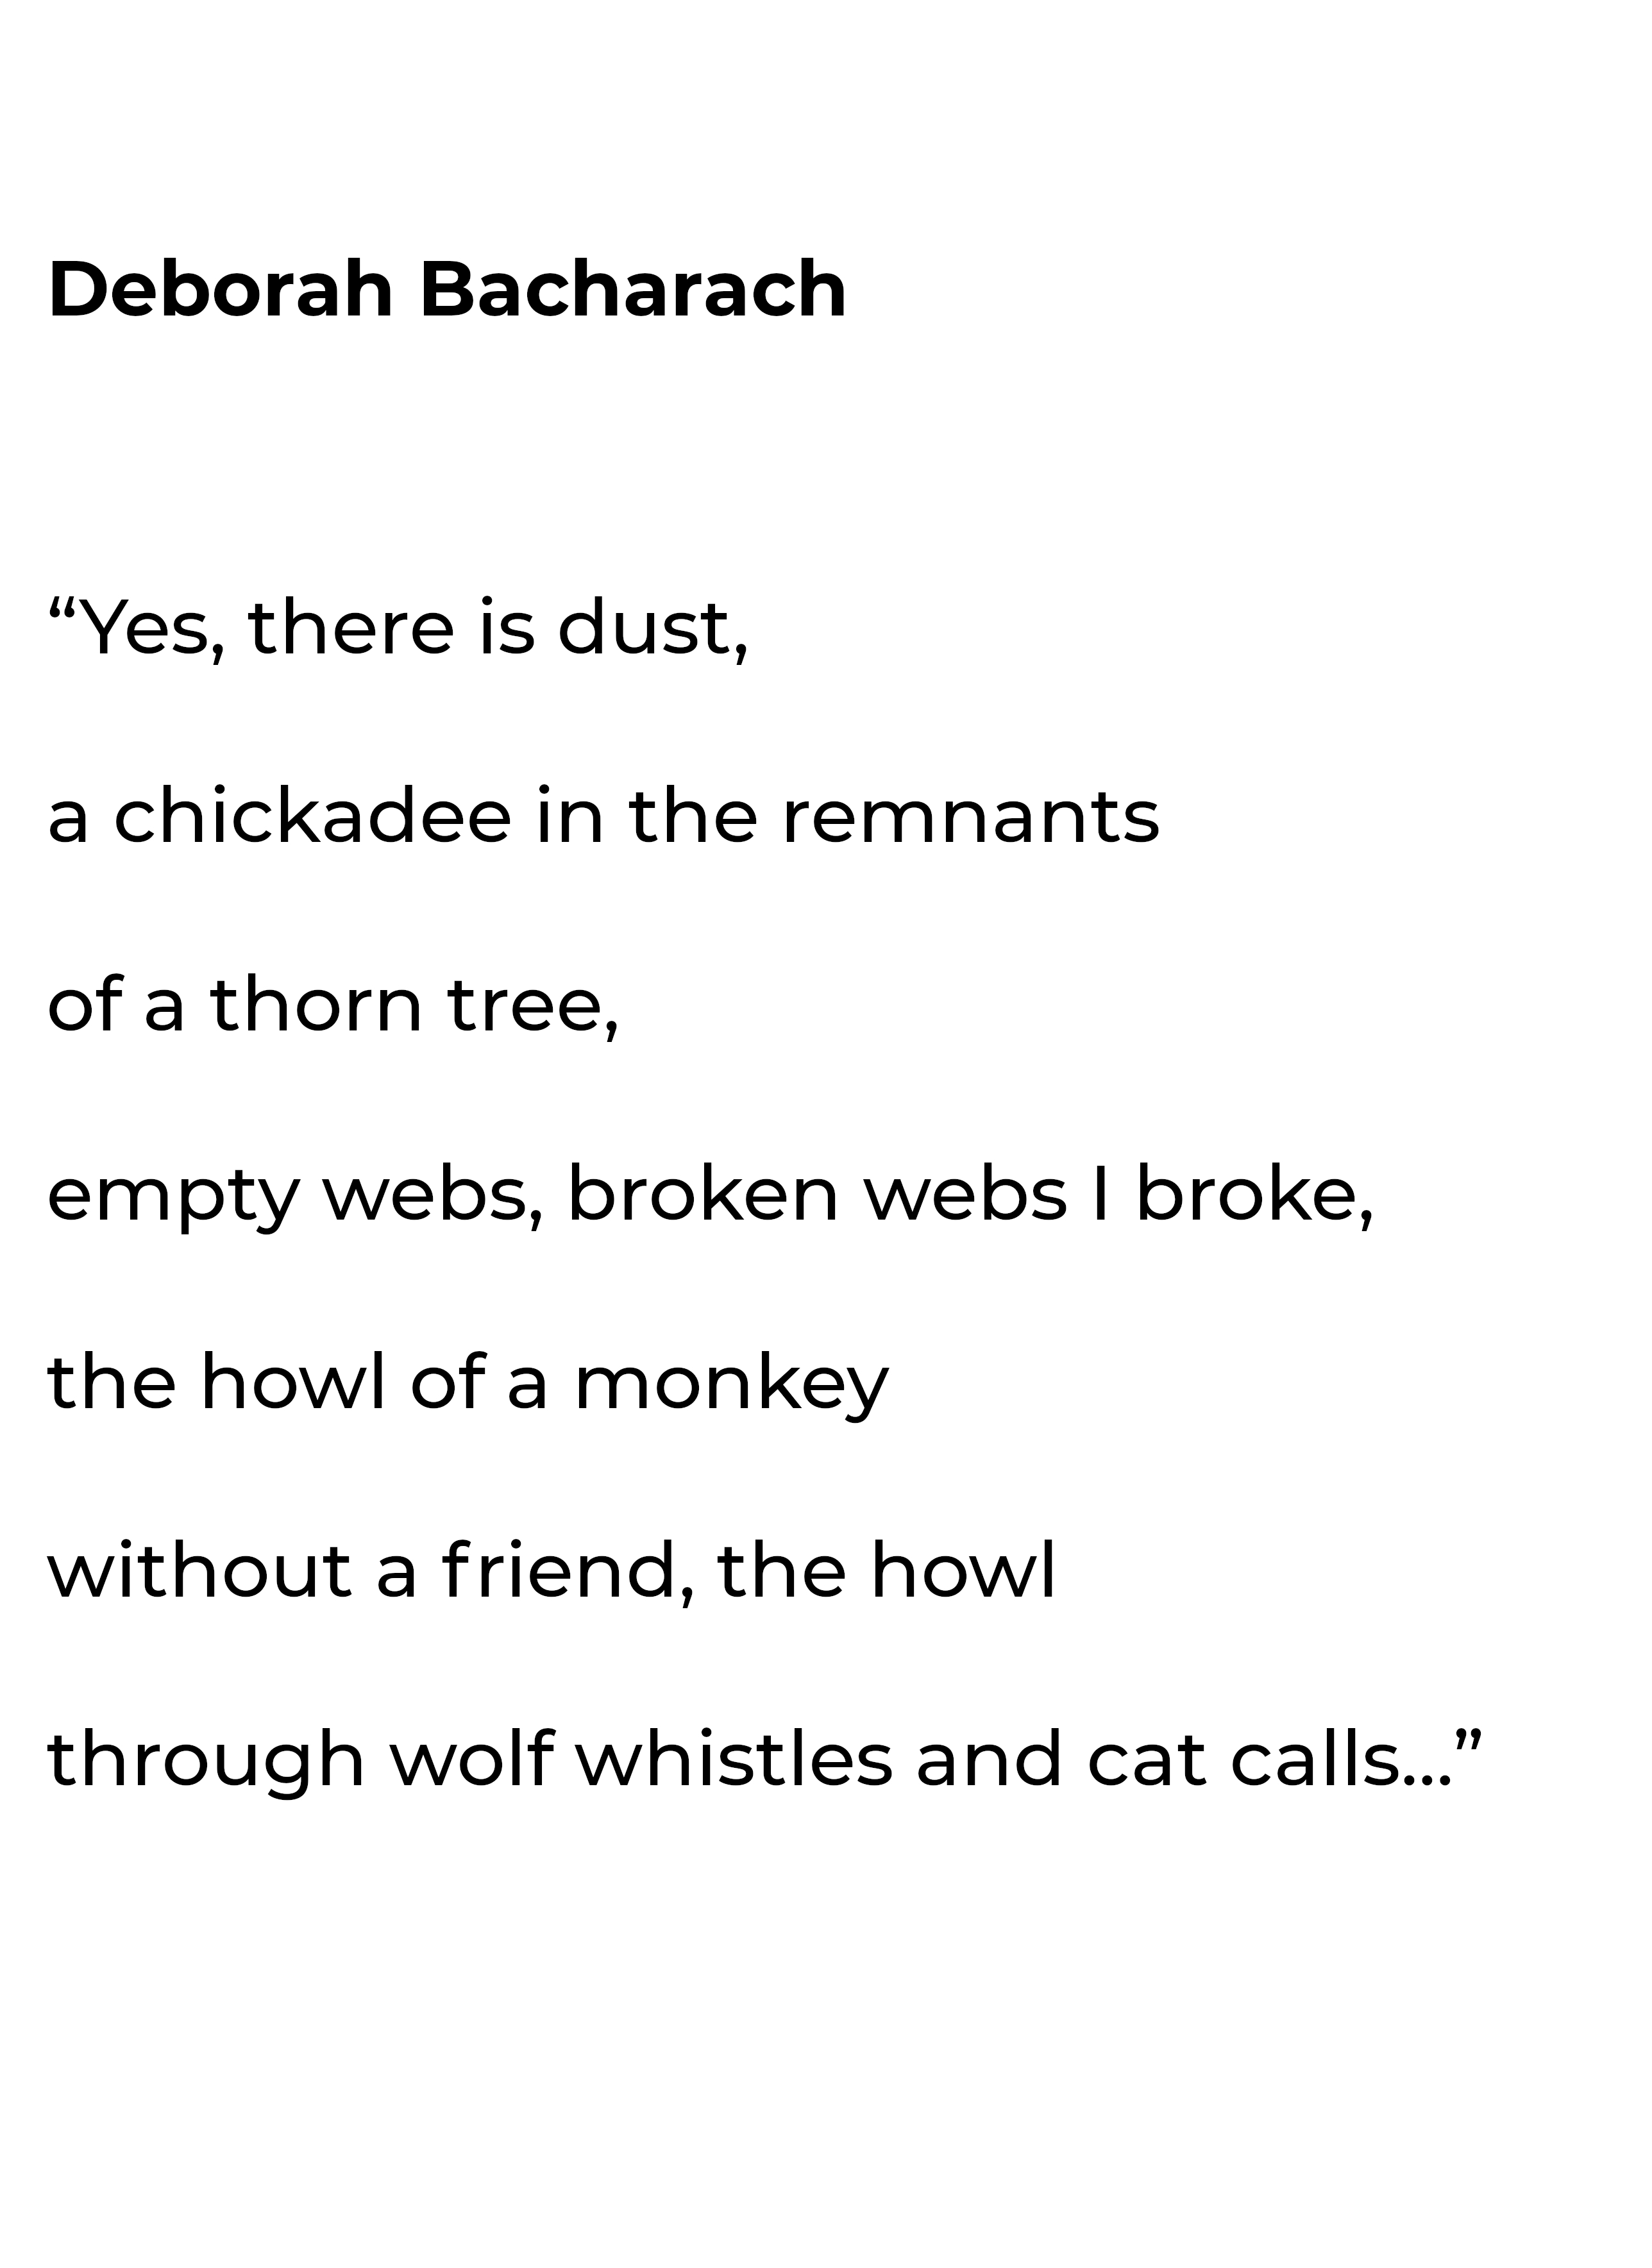 Deborah Bacharach's Poem